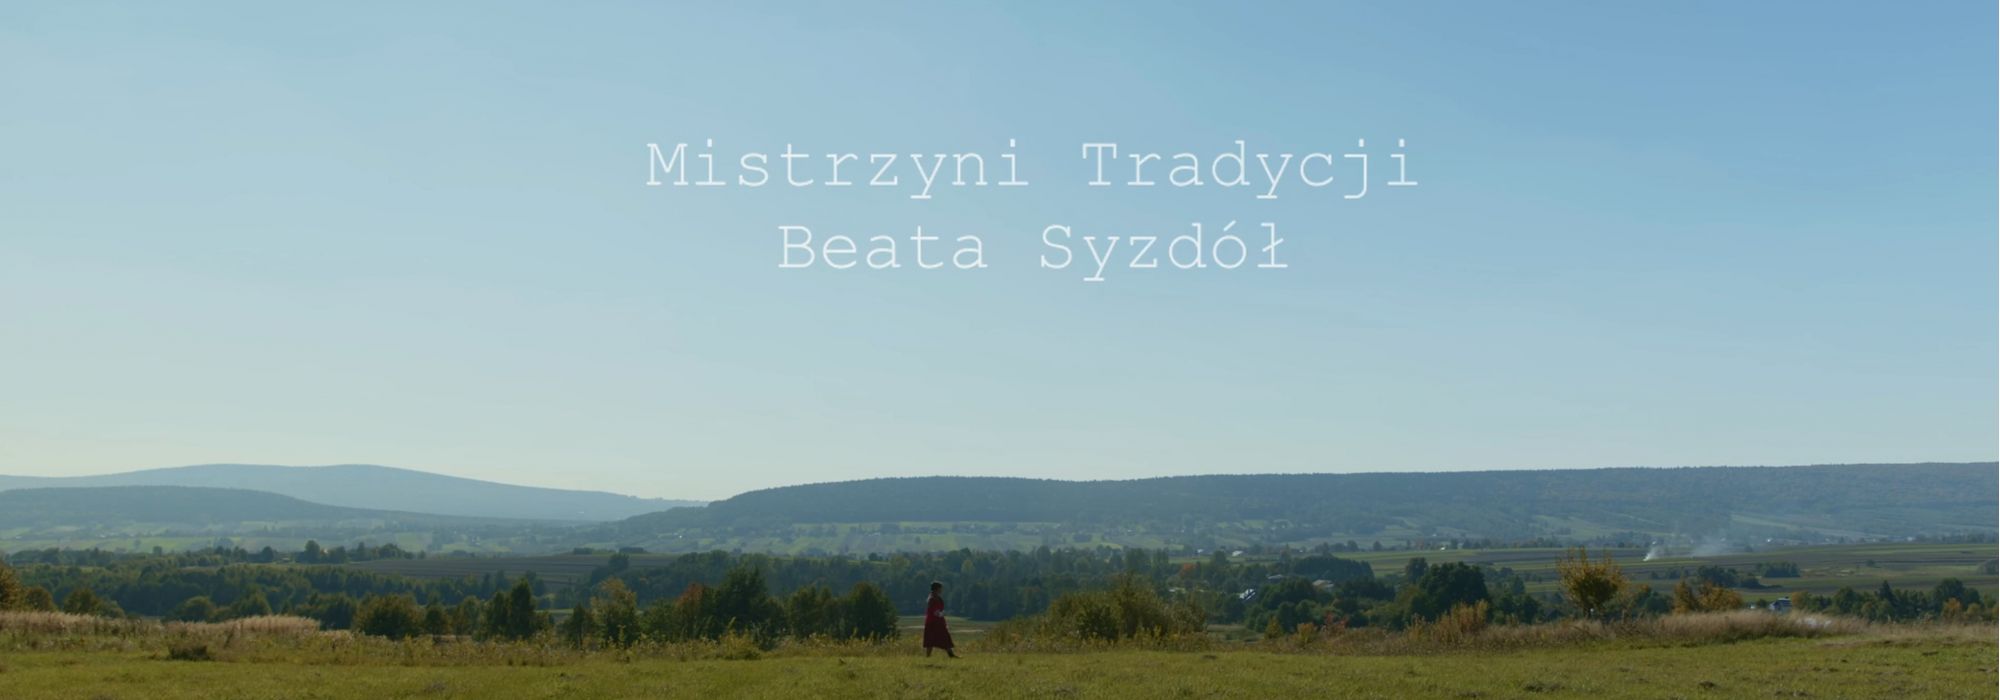 Odkryj wspólnie z Mistrzynią Tradycji Beatą Syzdół Urok Pasiaka Świętokrzyskiego - film dokumentalny